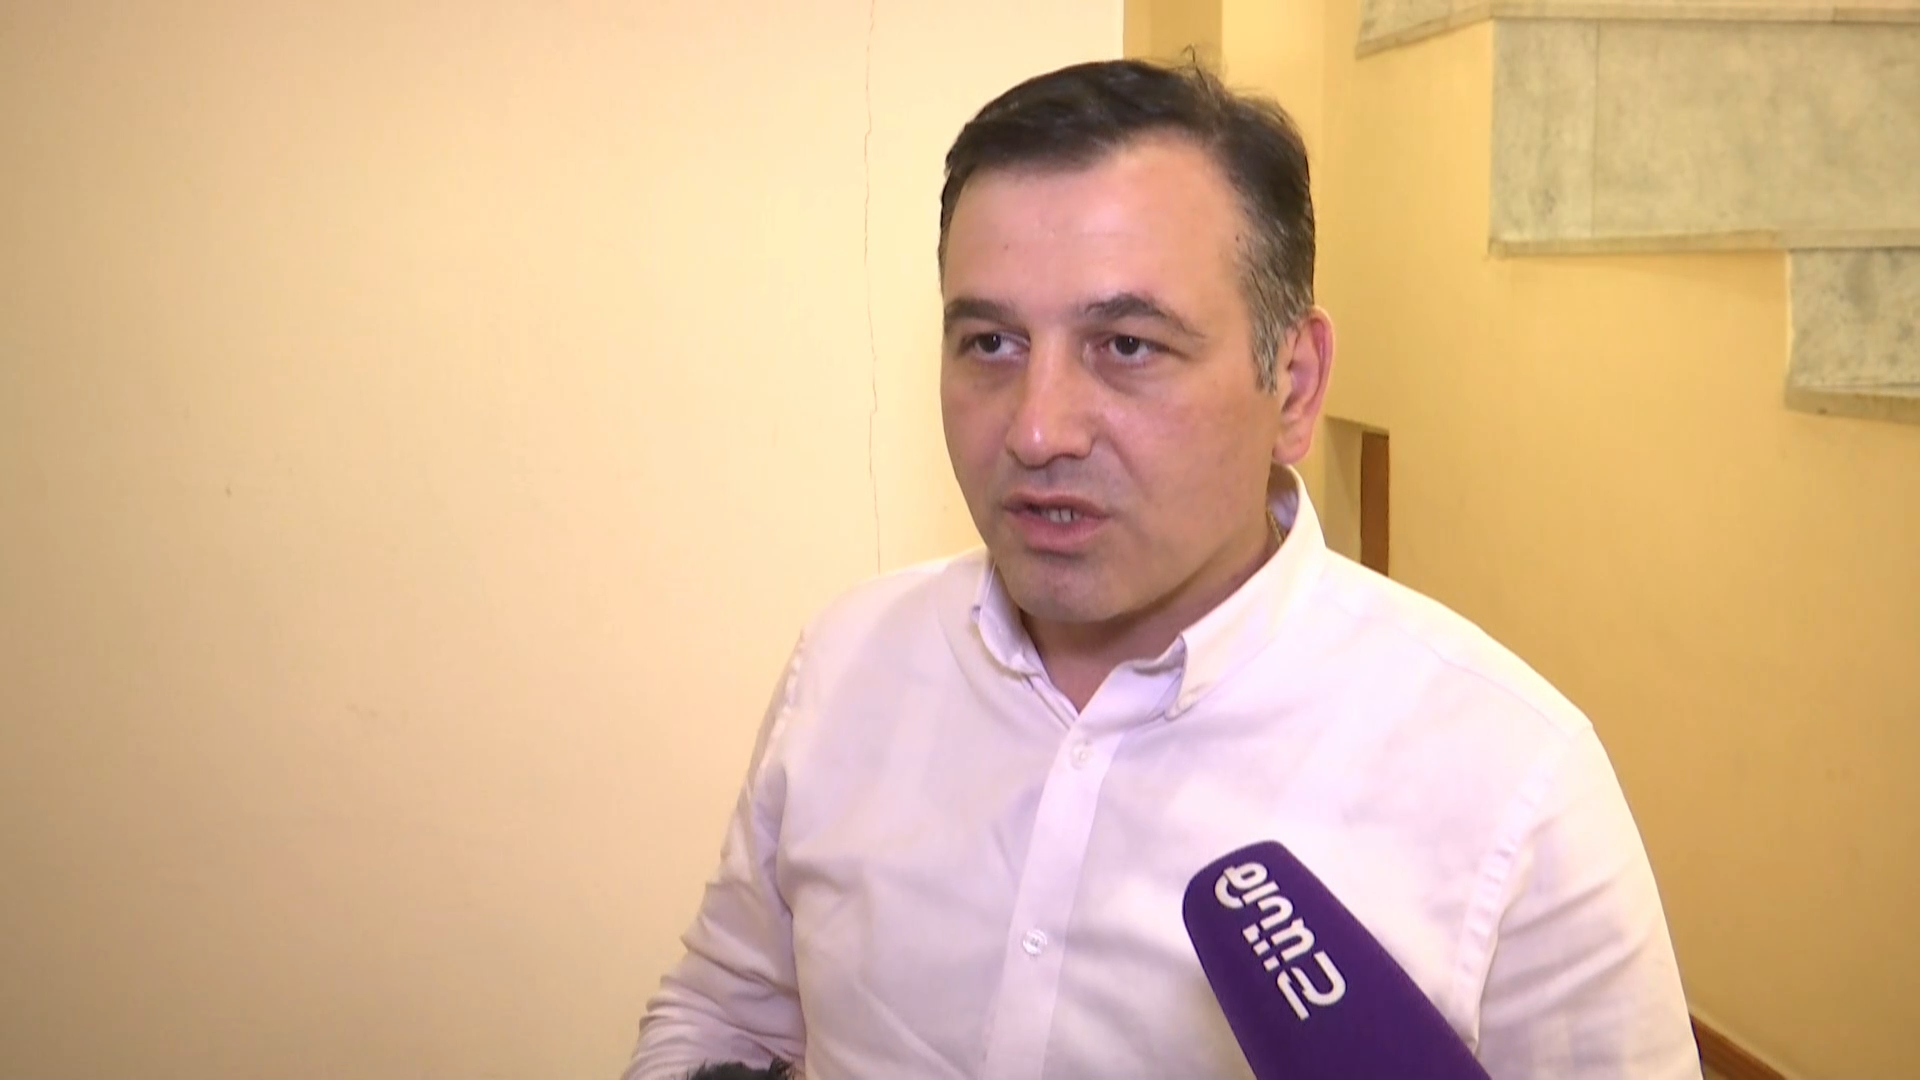 Հրայր Թովմասյանը պետք է վաղը դատարան չգնա, ոստիկաններն էլ թույլ չտան` մտնի տարածք. ԱԺ պատգամավոր